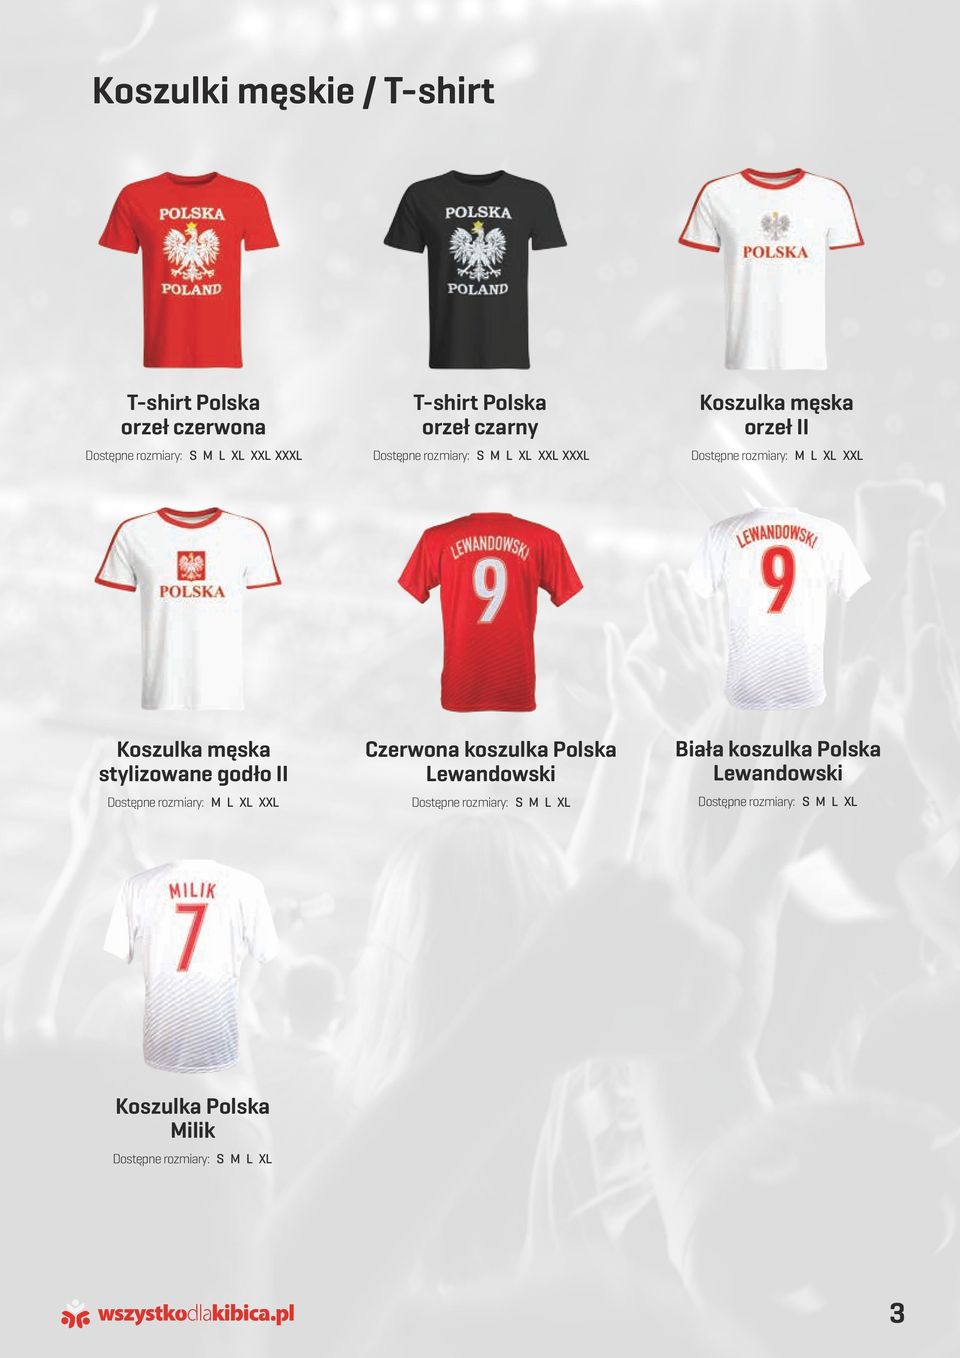 Koszulka męska stylizowane godło II Czerwona koszulka Polska Lewandowski Biała